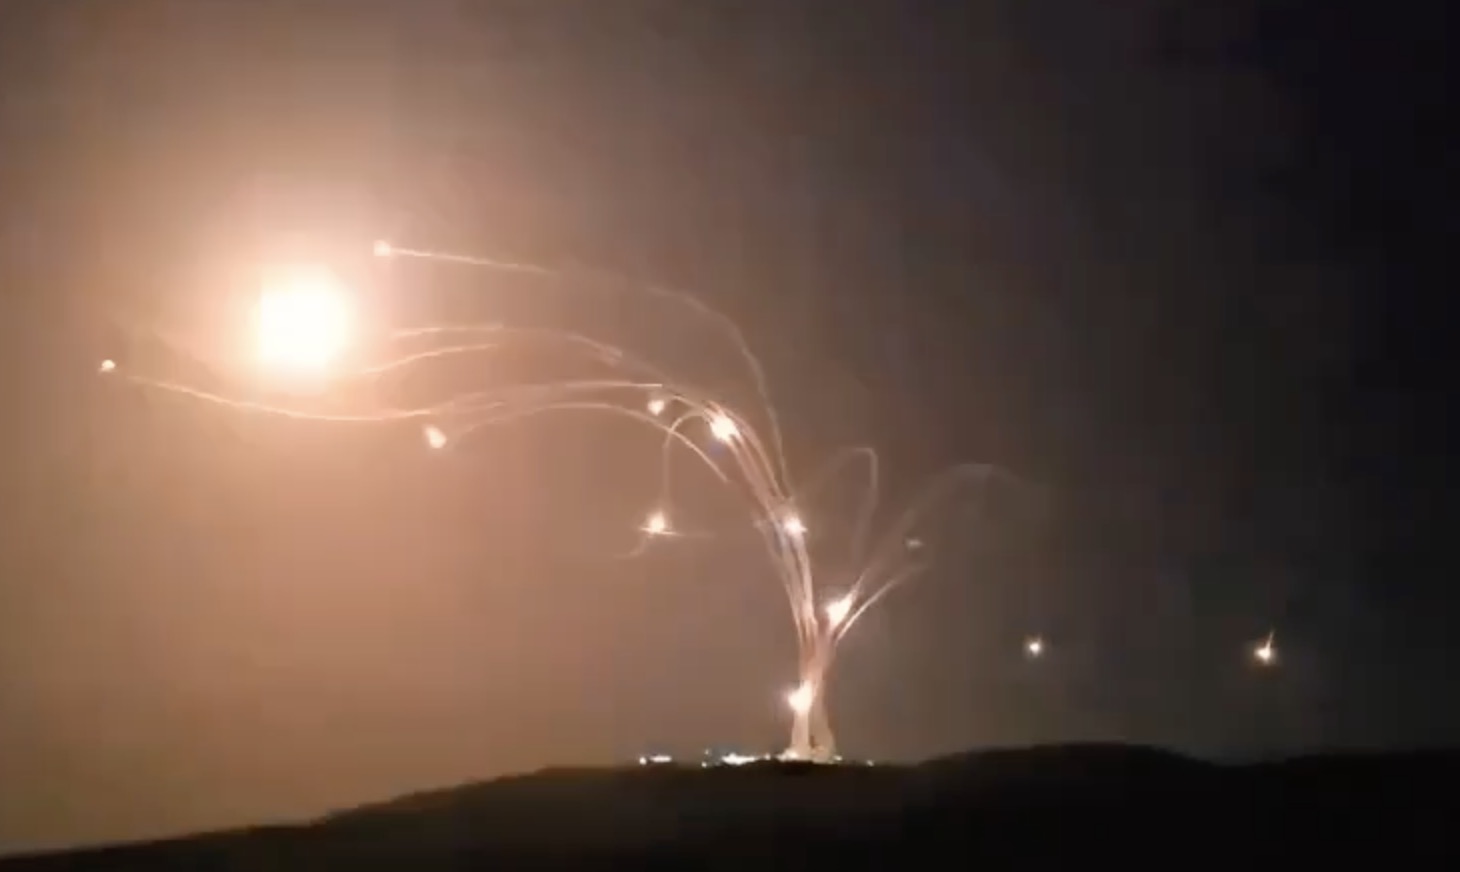 Le dôme de fer Israélien intercepte 80 roquettes tirées par le Hezbollah (Liban)